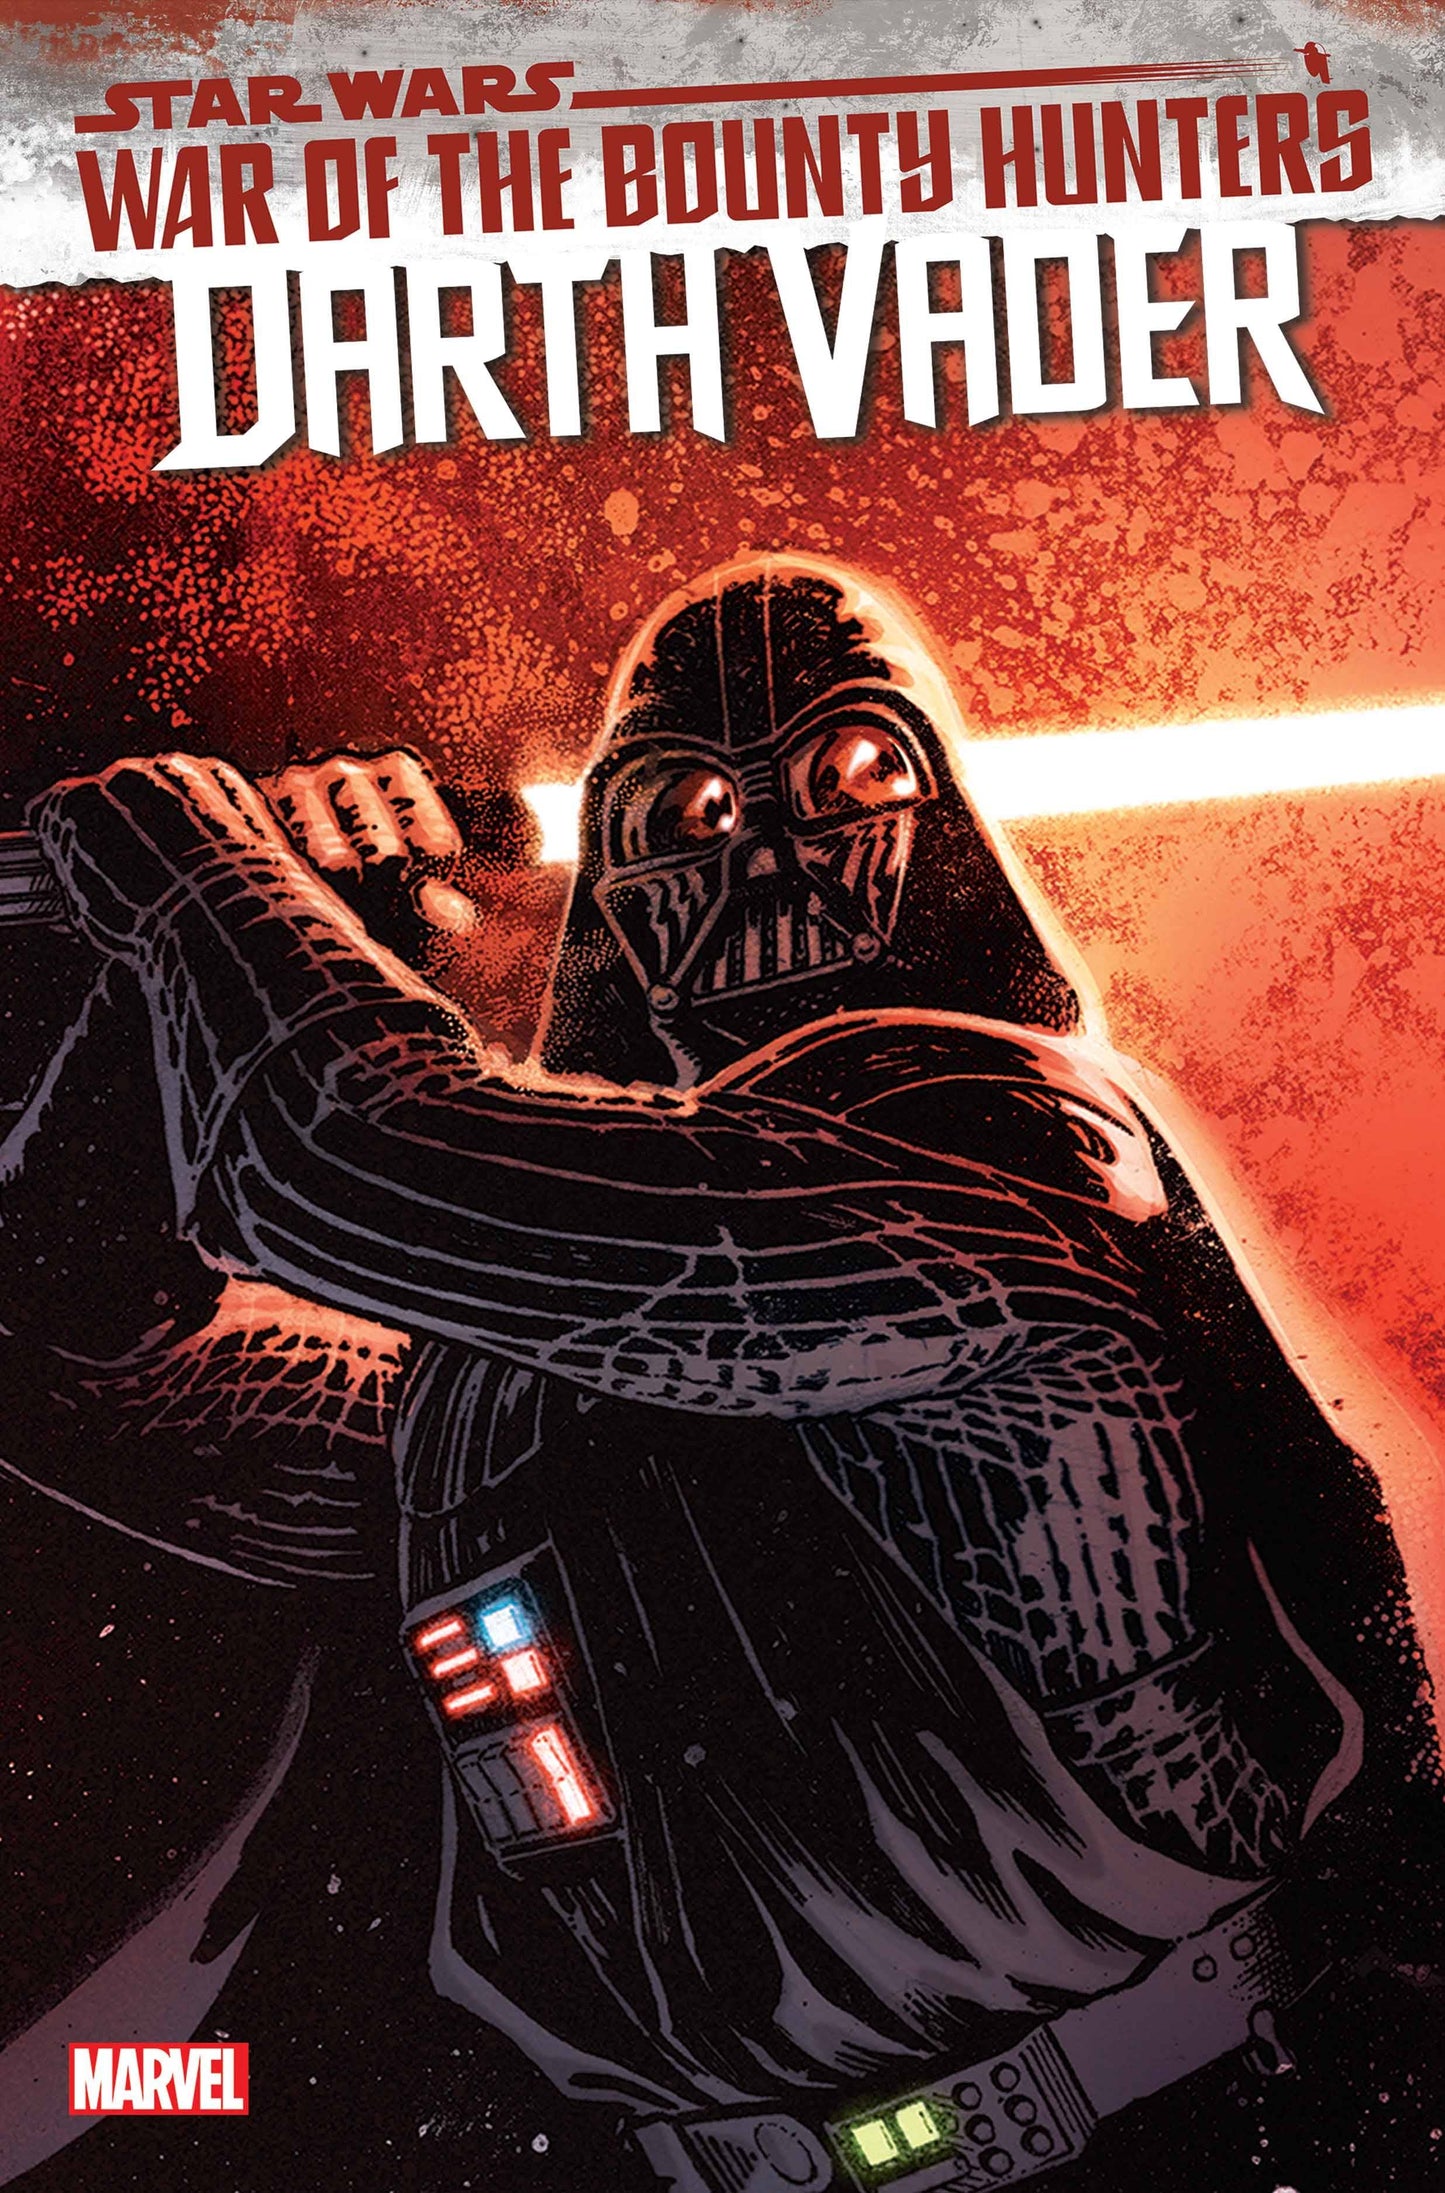 Star Wars Darth Vader #16